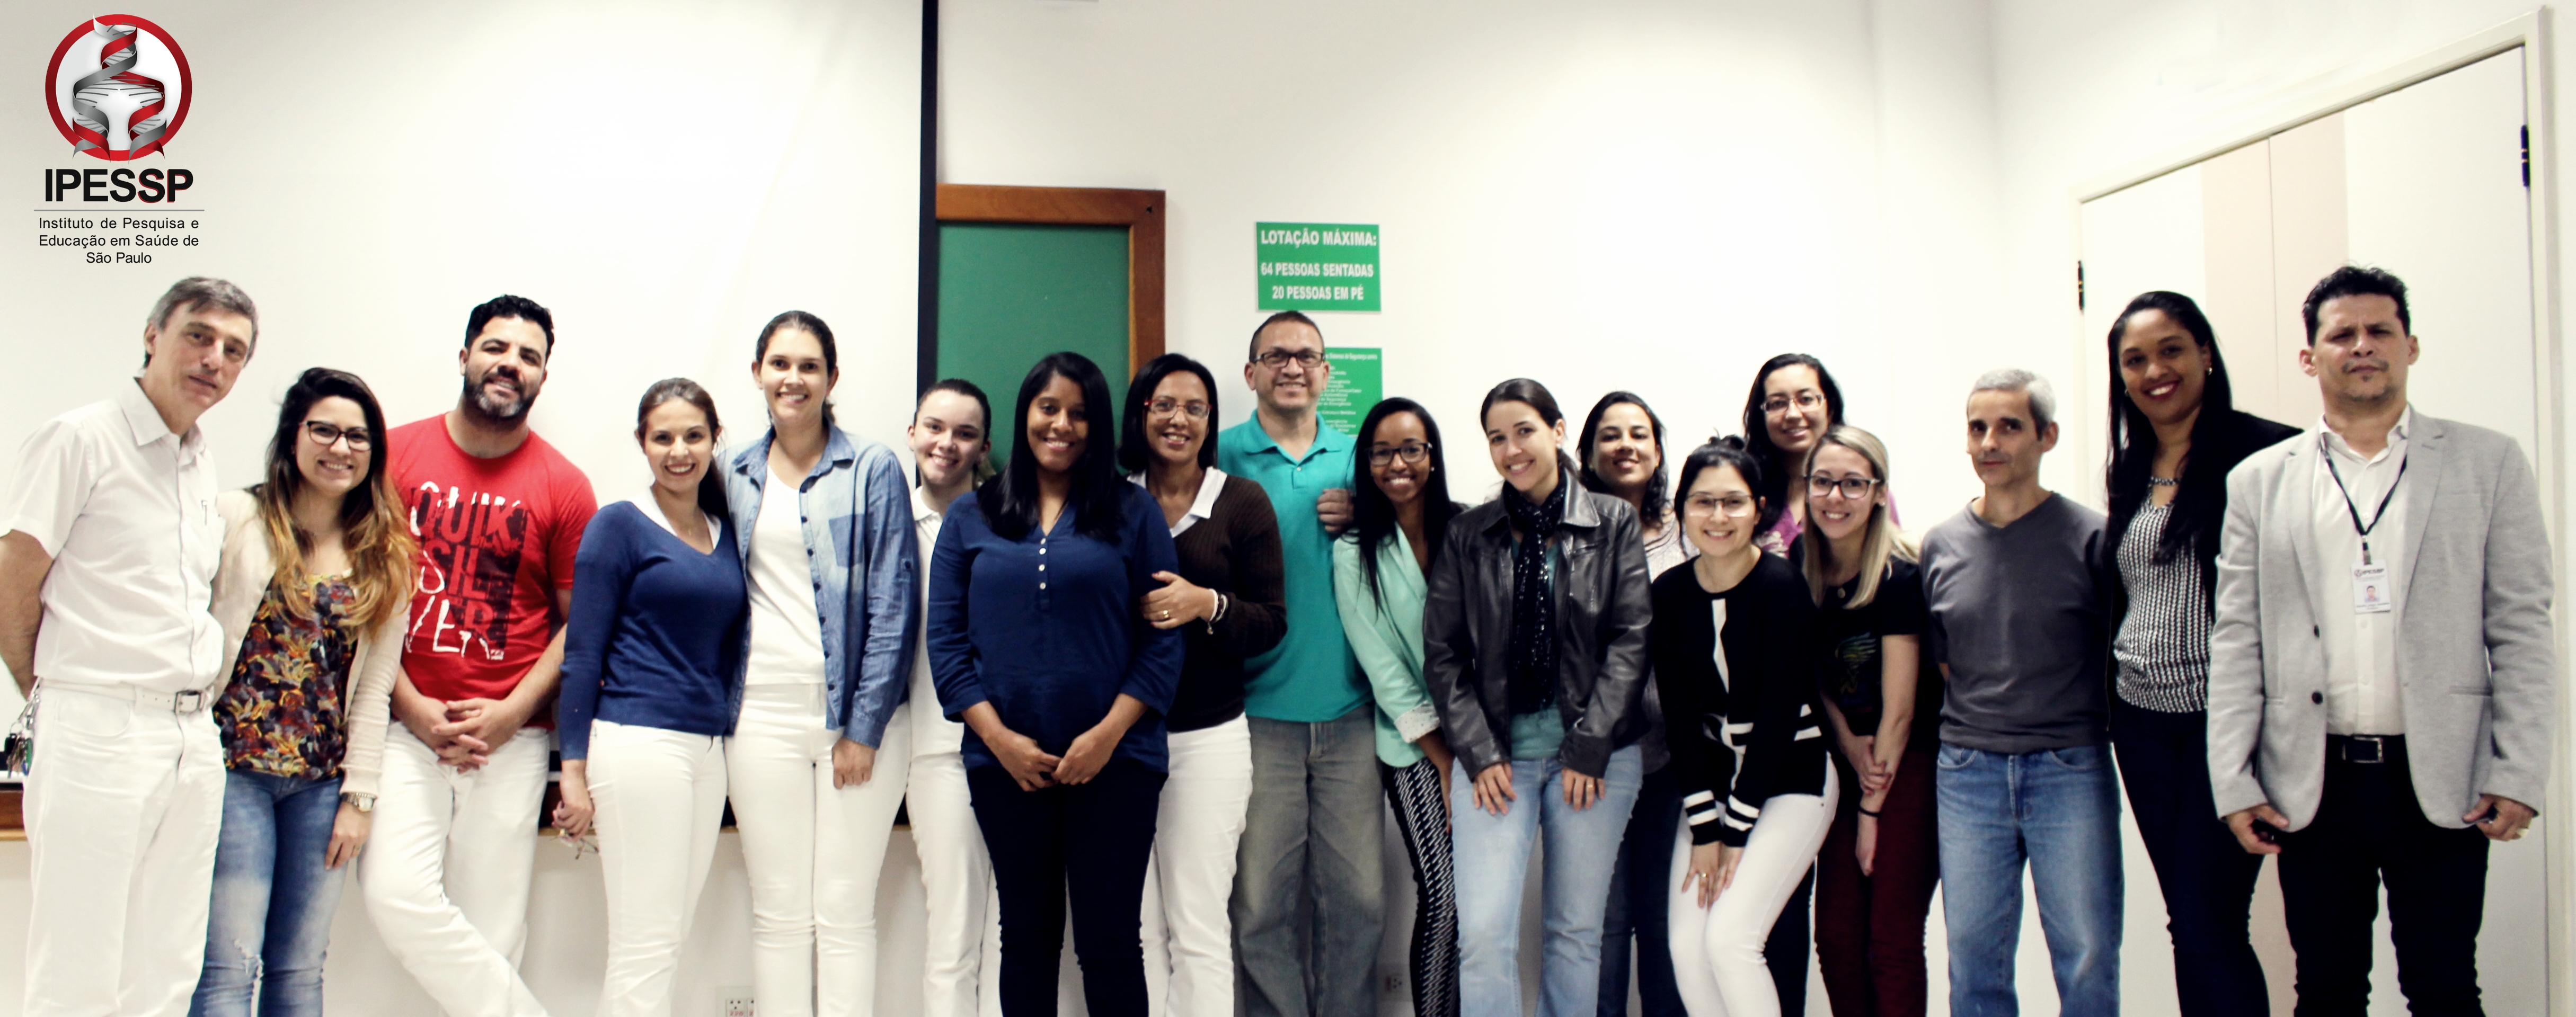 IPESSP conclui primeiro curso no polo de São José dos Campos